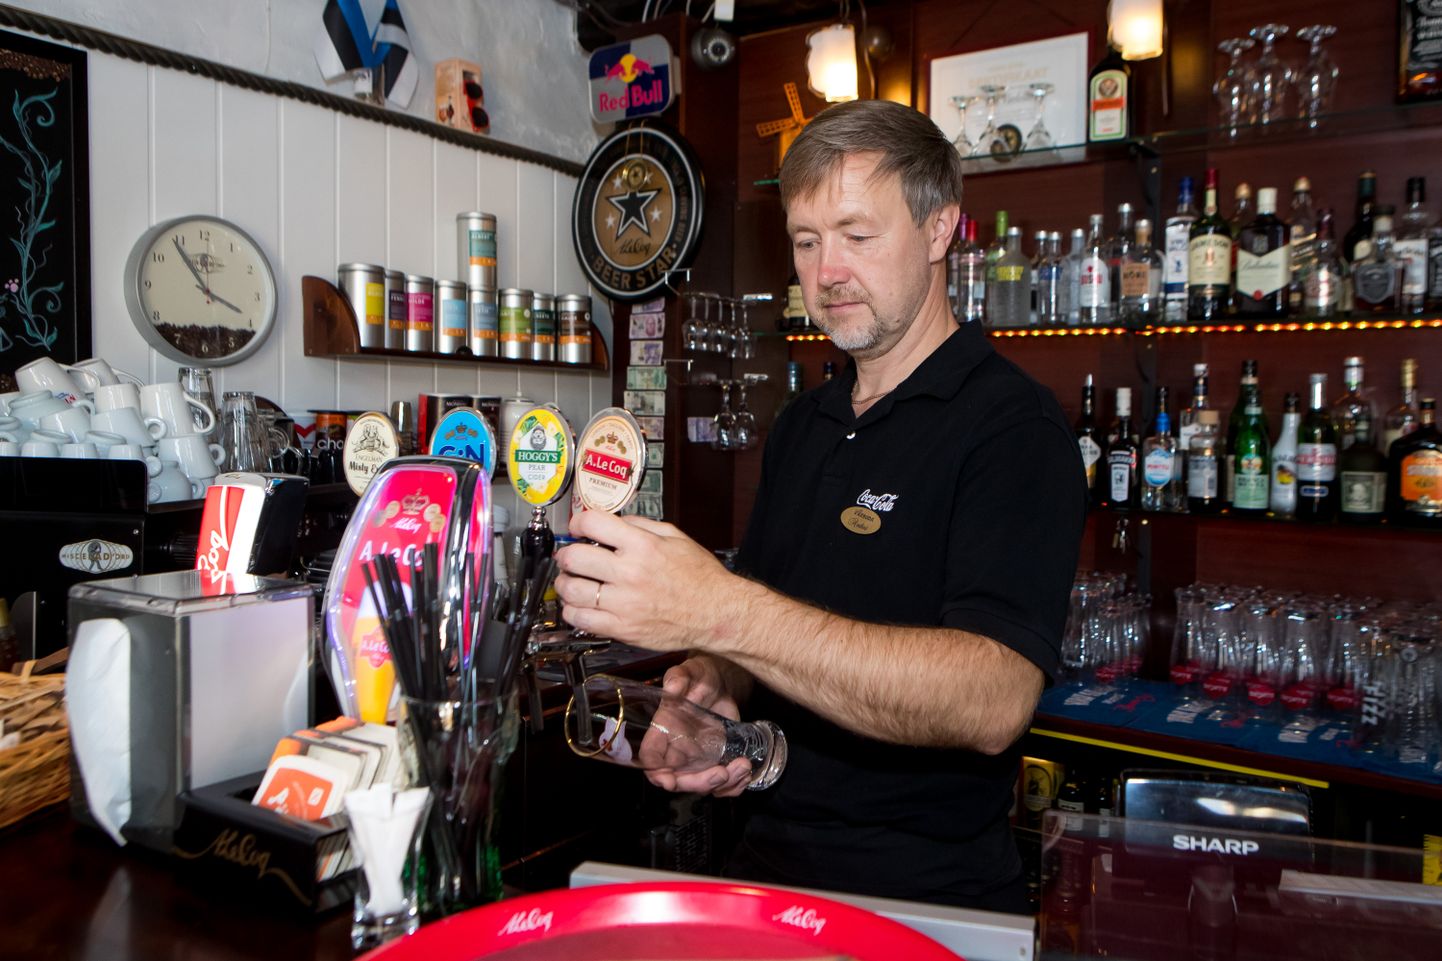 MIS TEHA: Vaekoja pubi omanik Andres Altrof märkis, et nii kaua, kuni on nõudlust ja kliente, hoitakse pubi uksed ka alkoholipiirangu kehtimise ajal lahti.